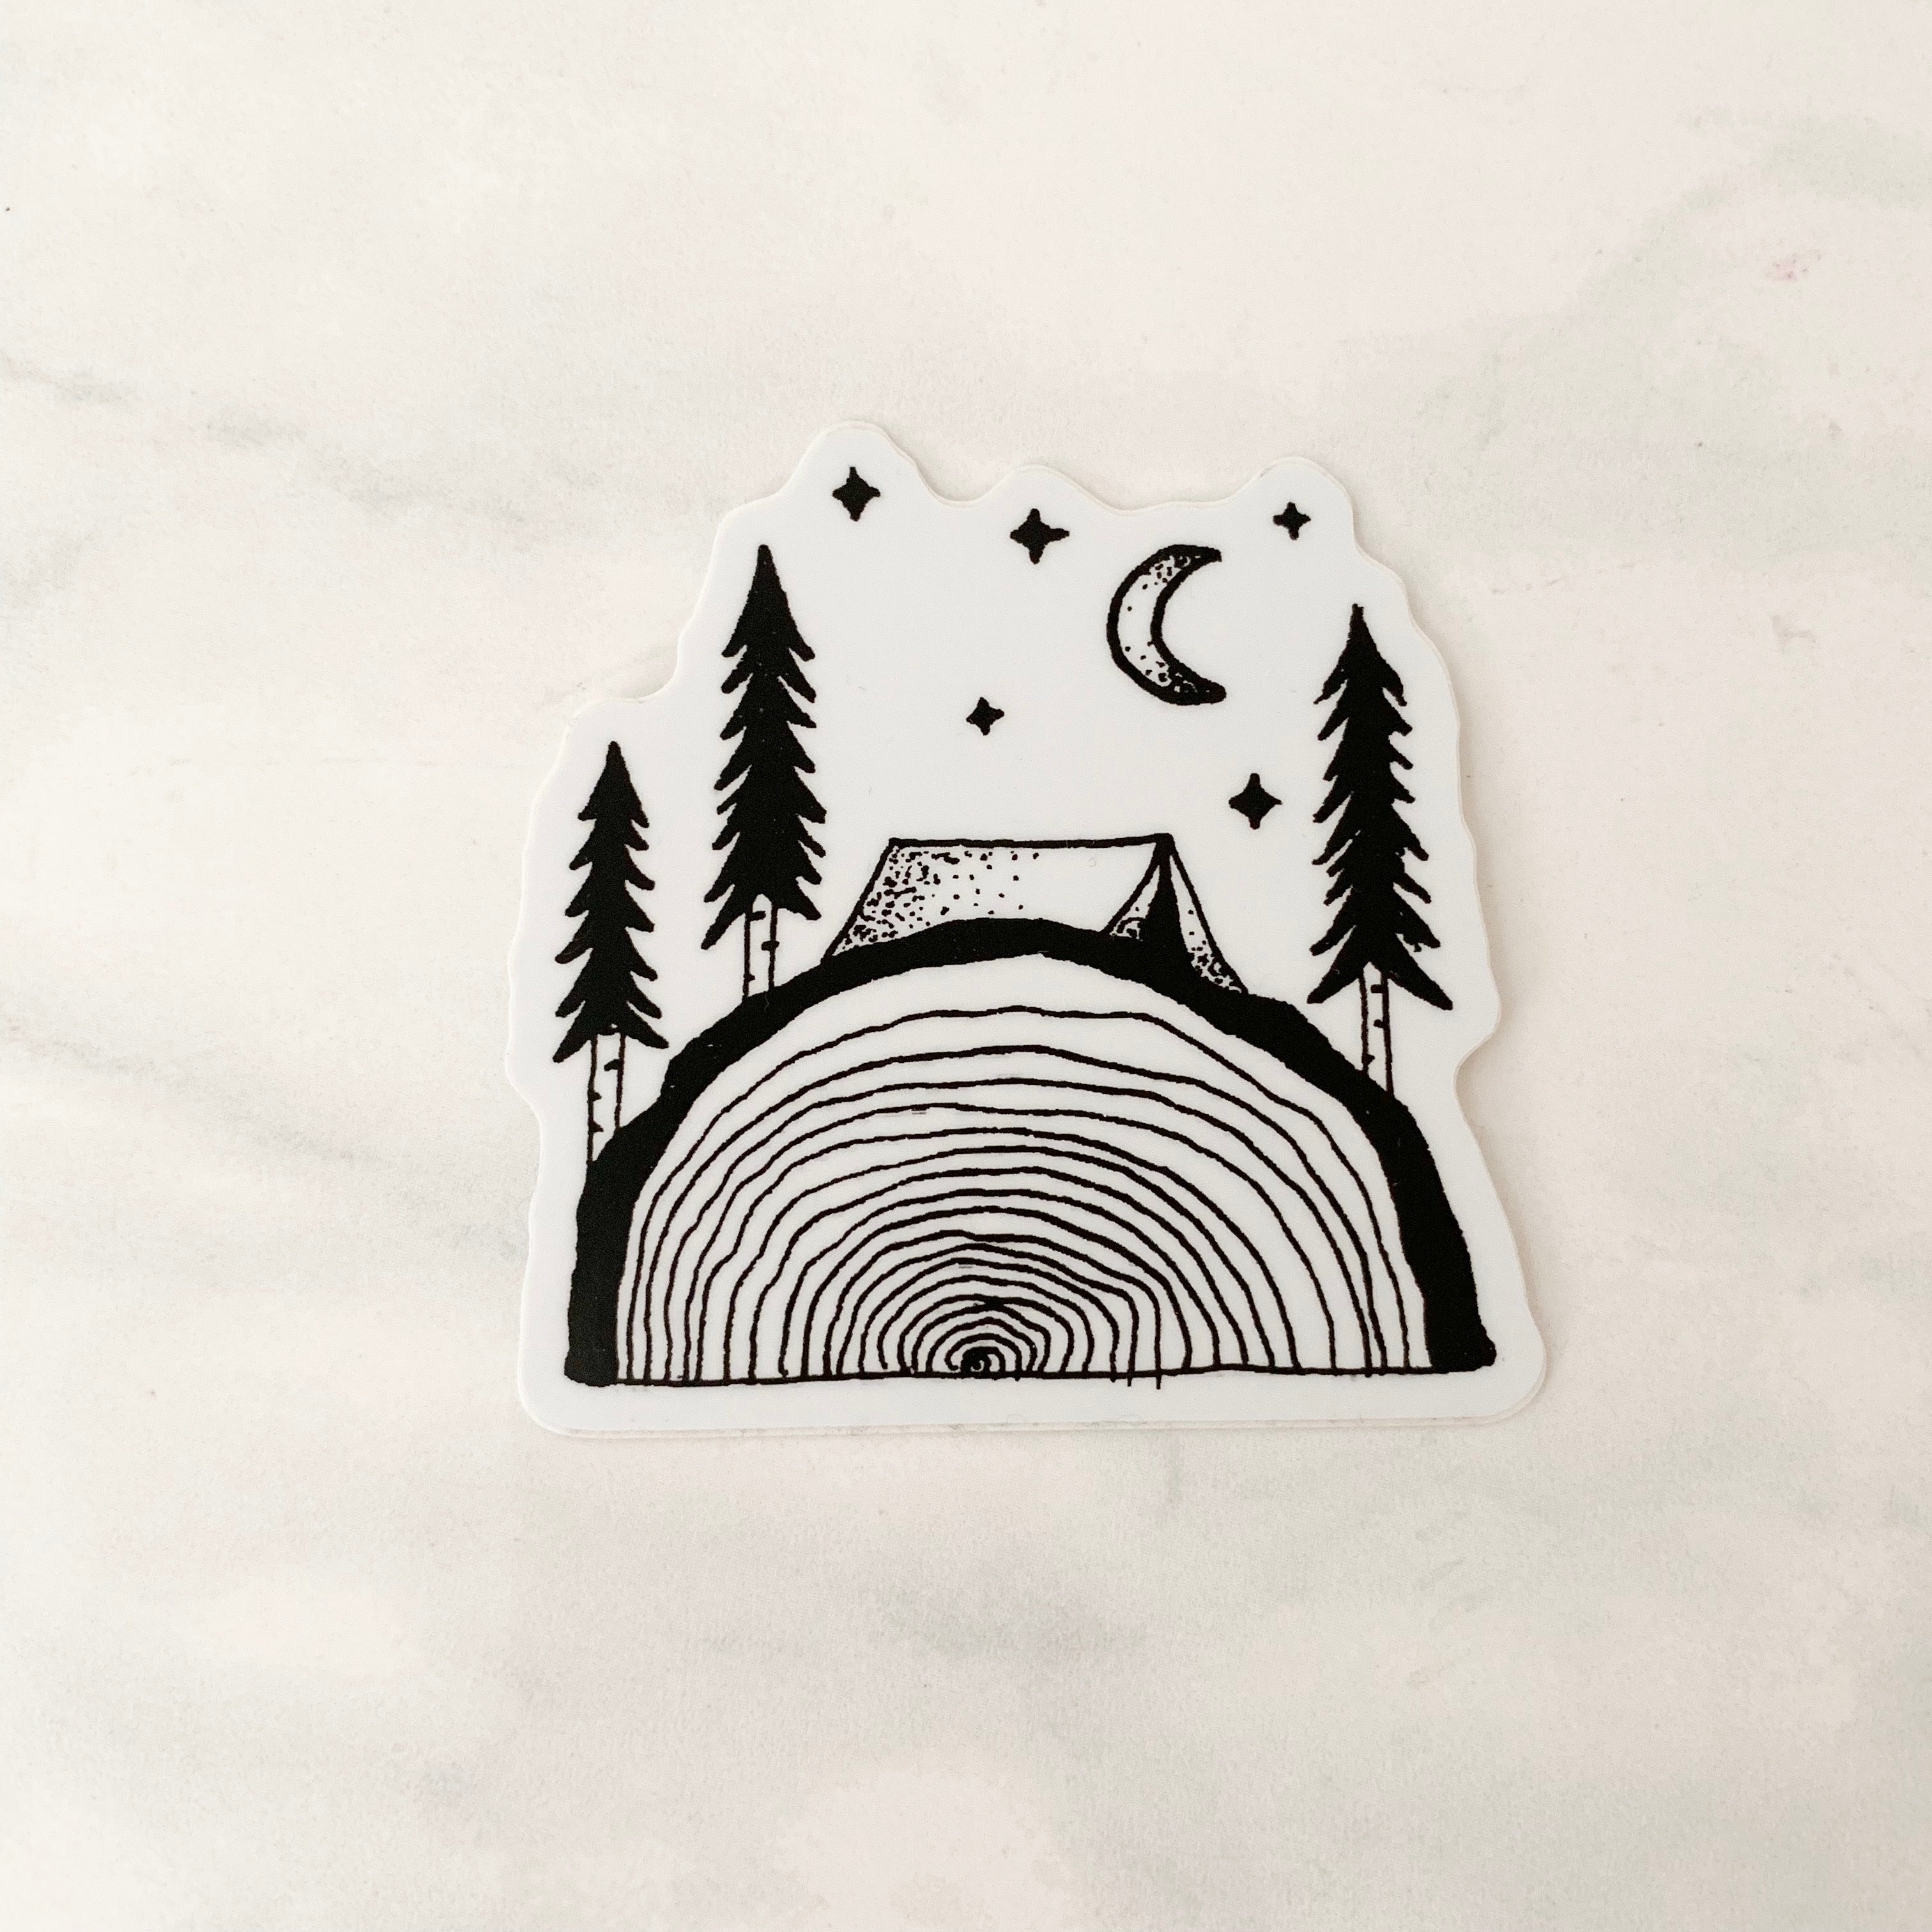 Tree Slice Sticker